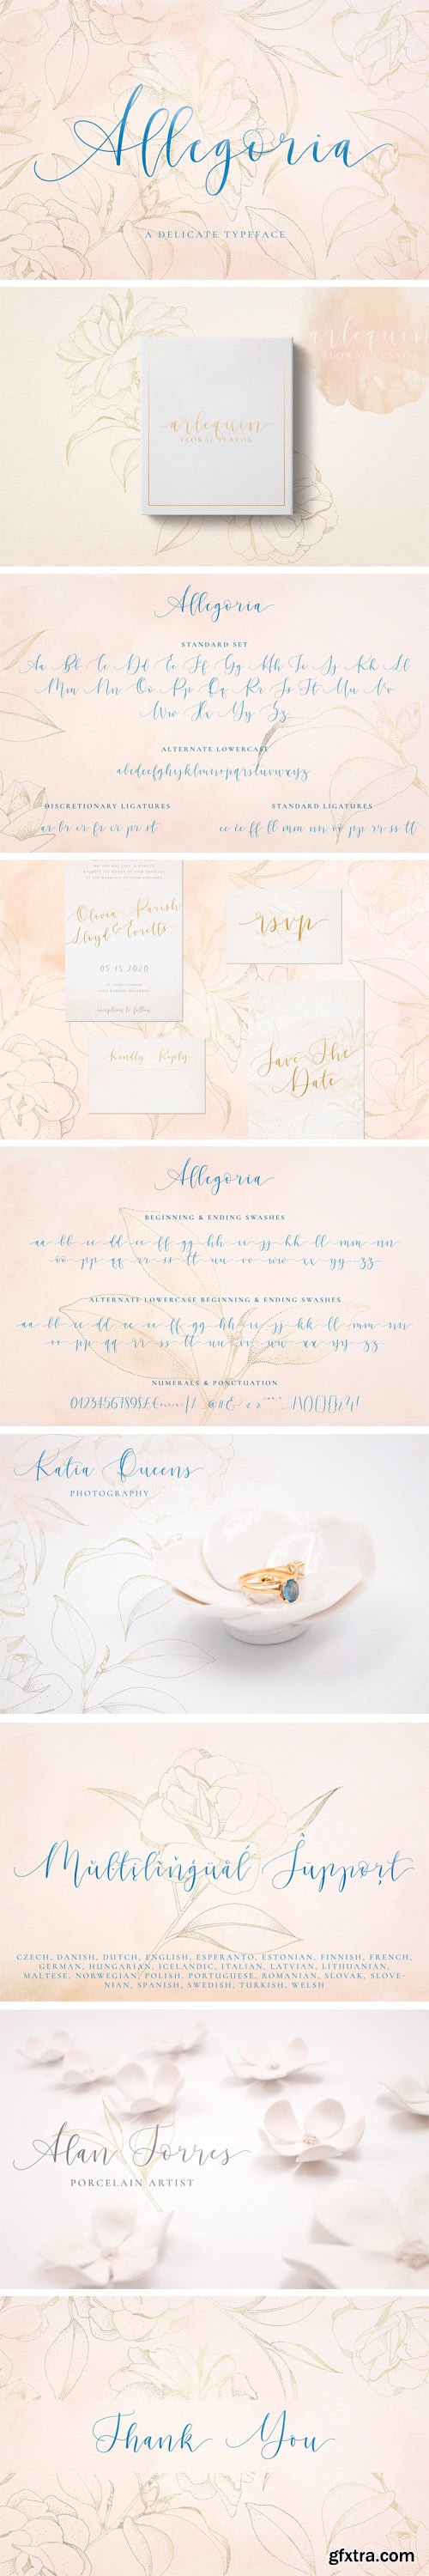 CM - Allegoria - Elegant Calligraphy Font 2701720